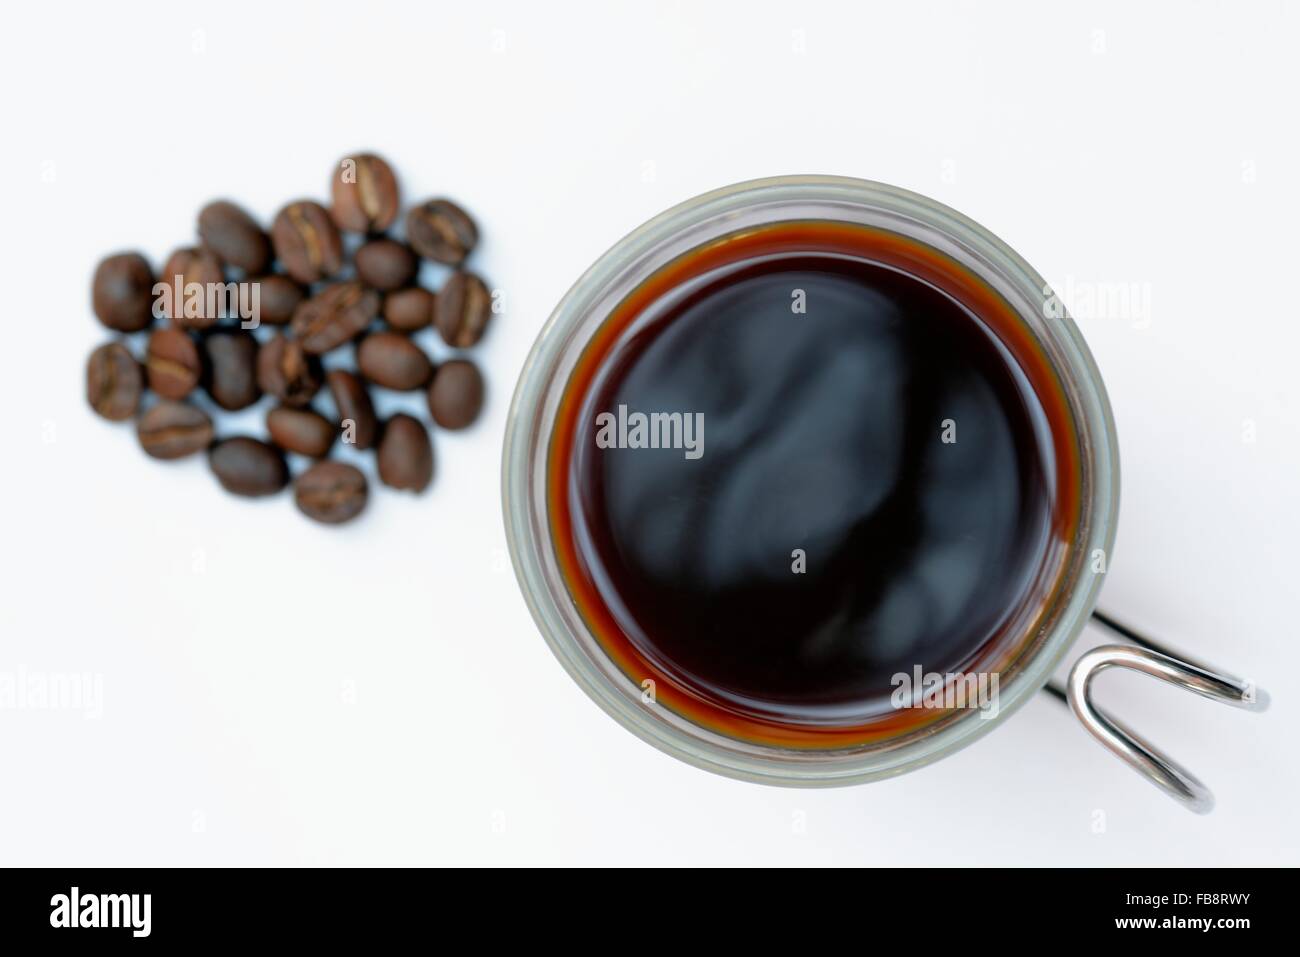 Anteprima salva per un lightbox Trova immagini simili Condividi Stock Photo: tazza di caffè con caffè in grani Foto Stock